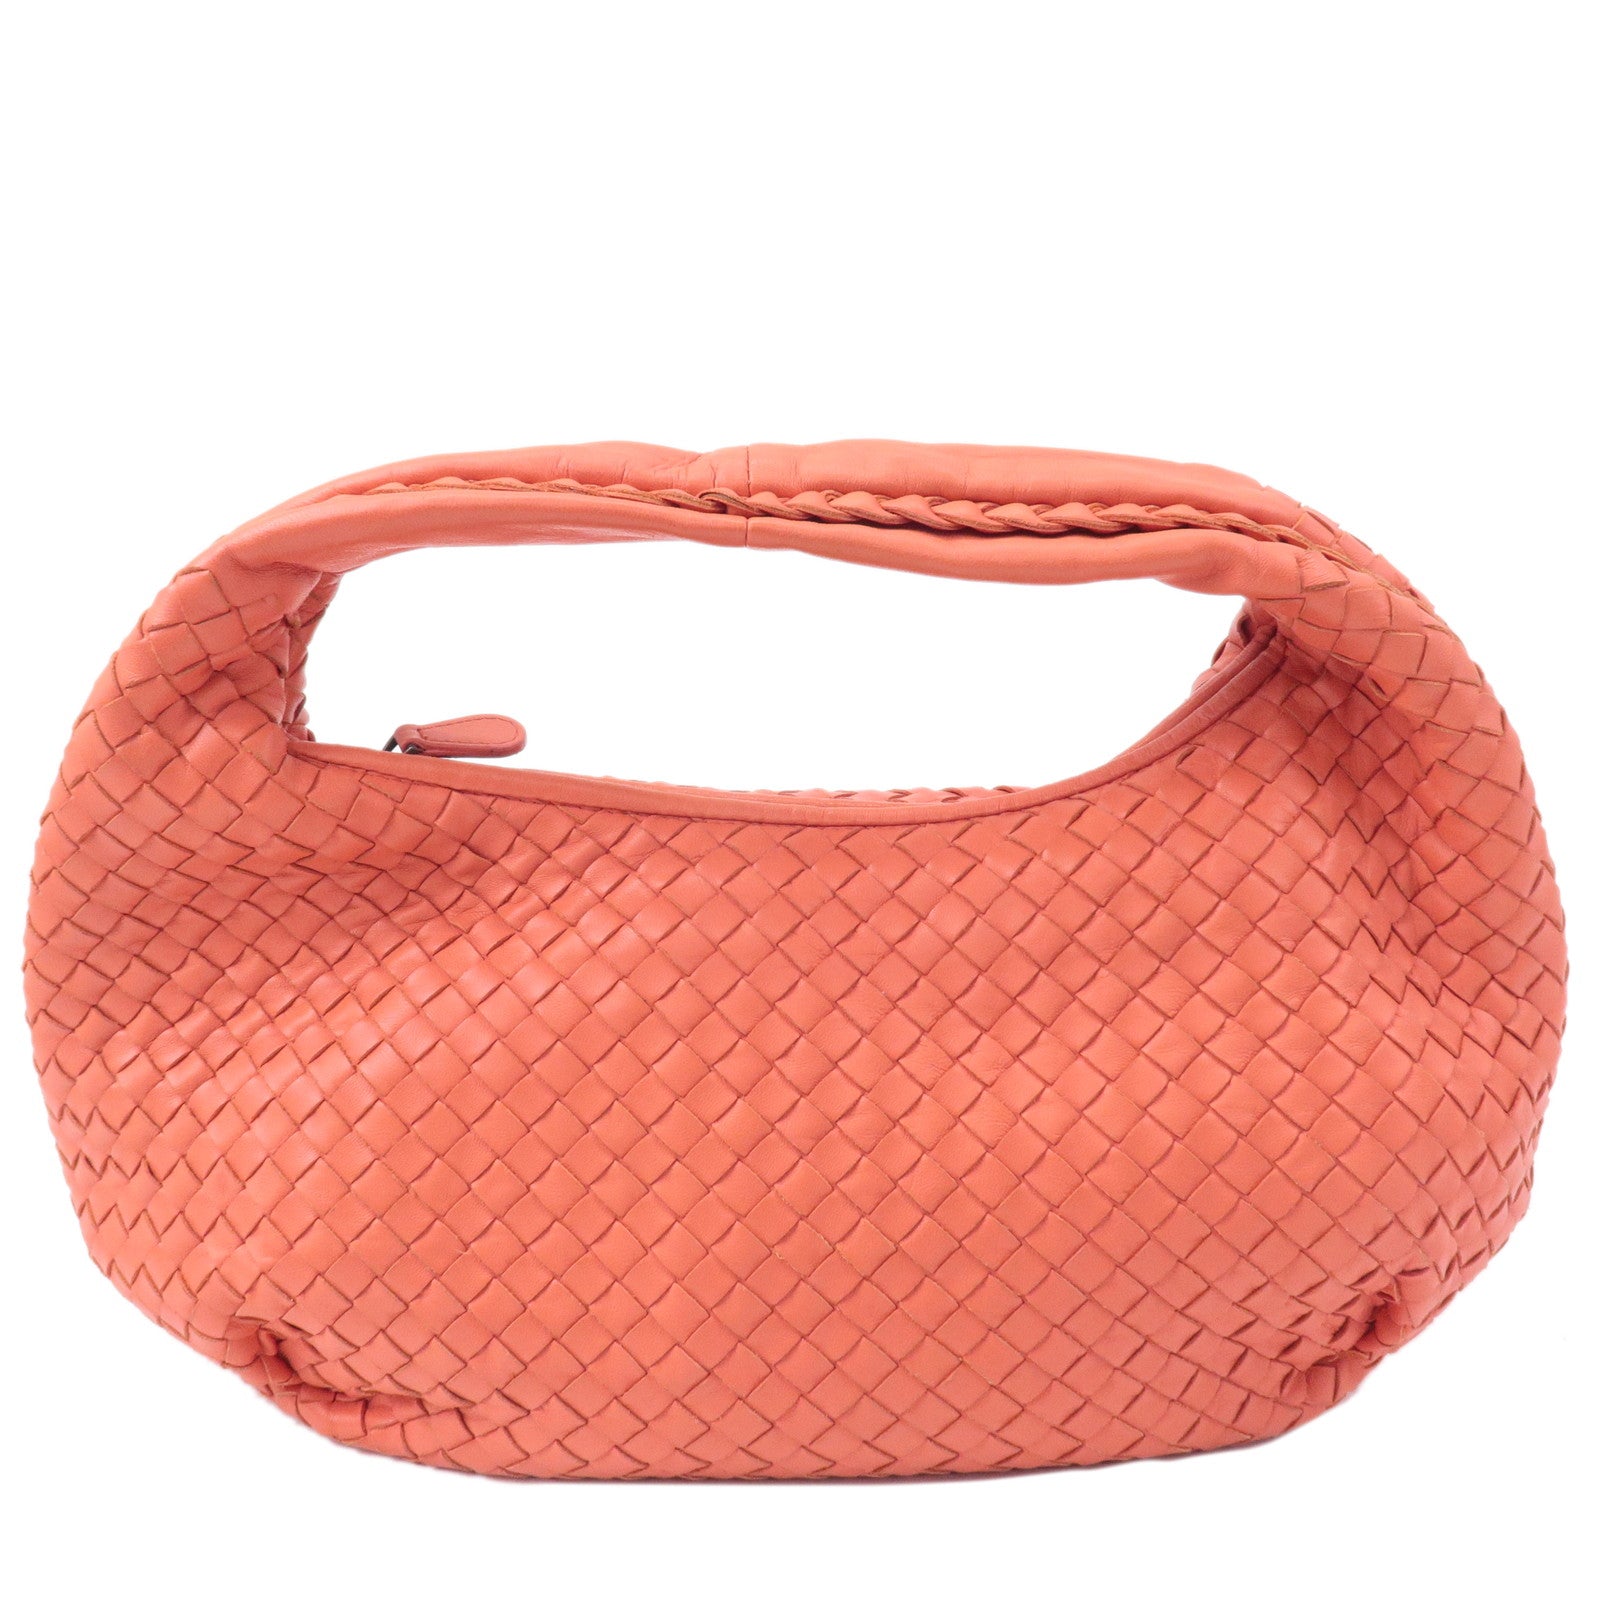 BOTTEGA-VENETA-Intrecciato-Hobo-Leather-Shoulder-Bag-Pink-232499